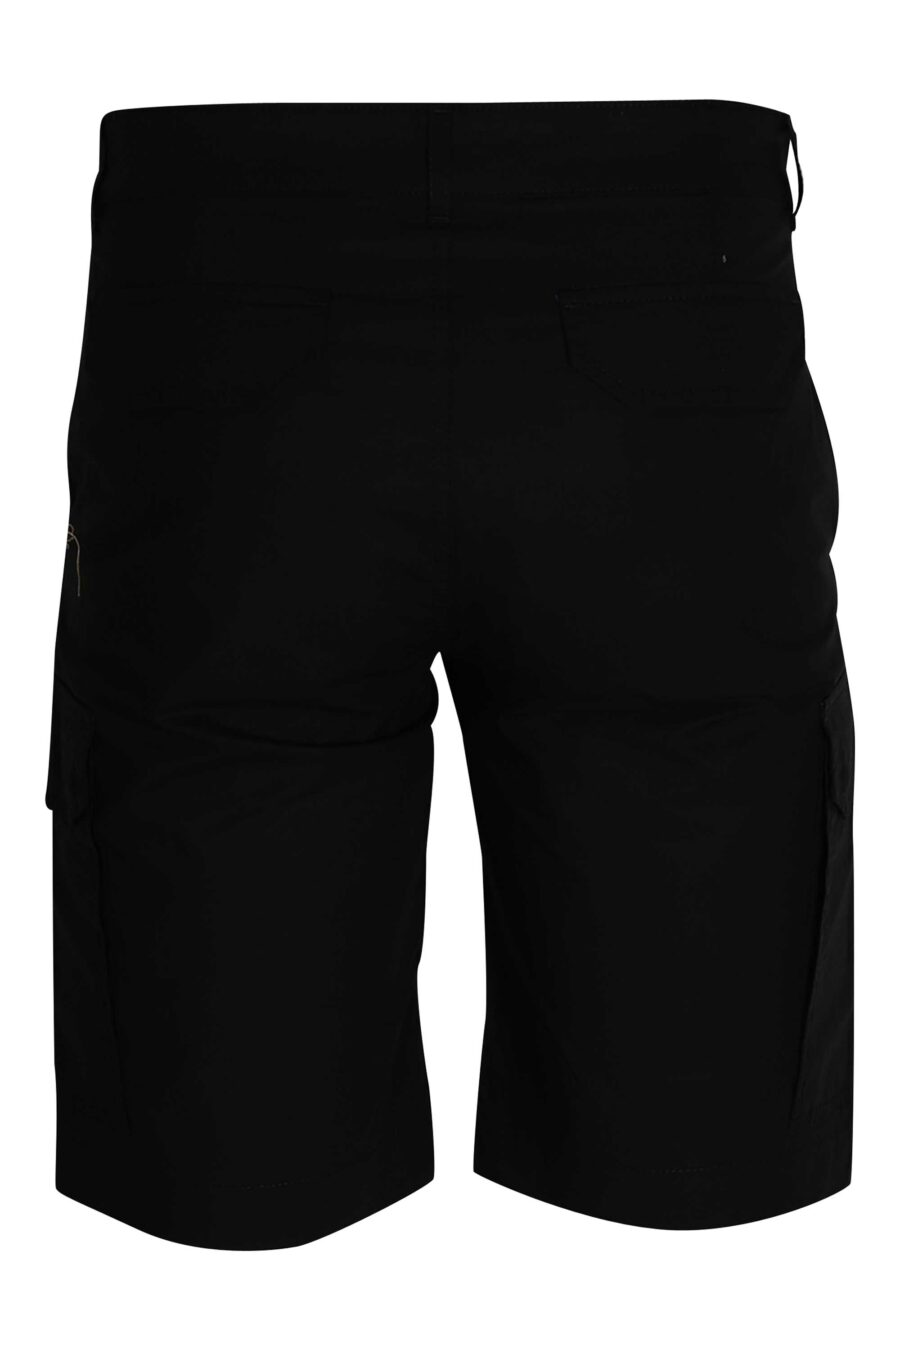 Schwarze Cargo-Shorts mit Logo - 4062226166942 2